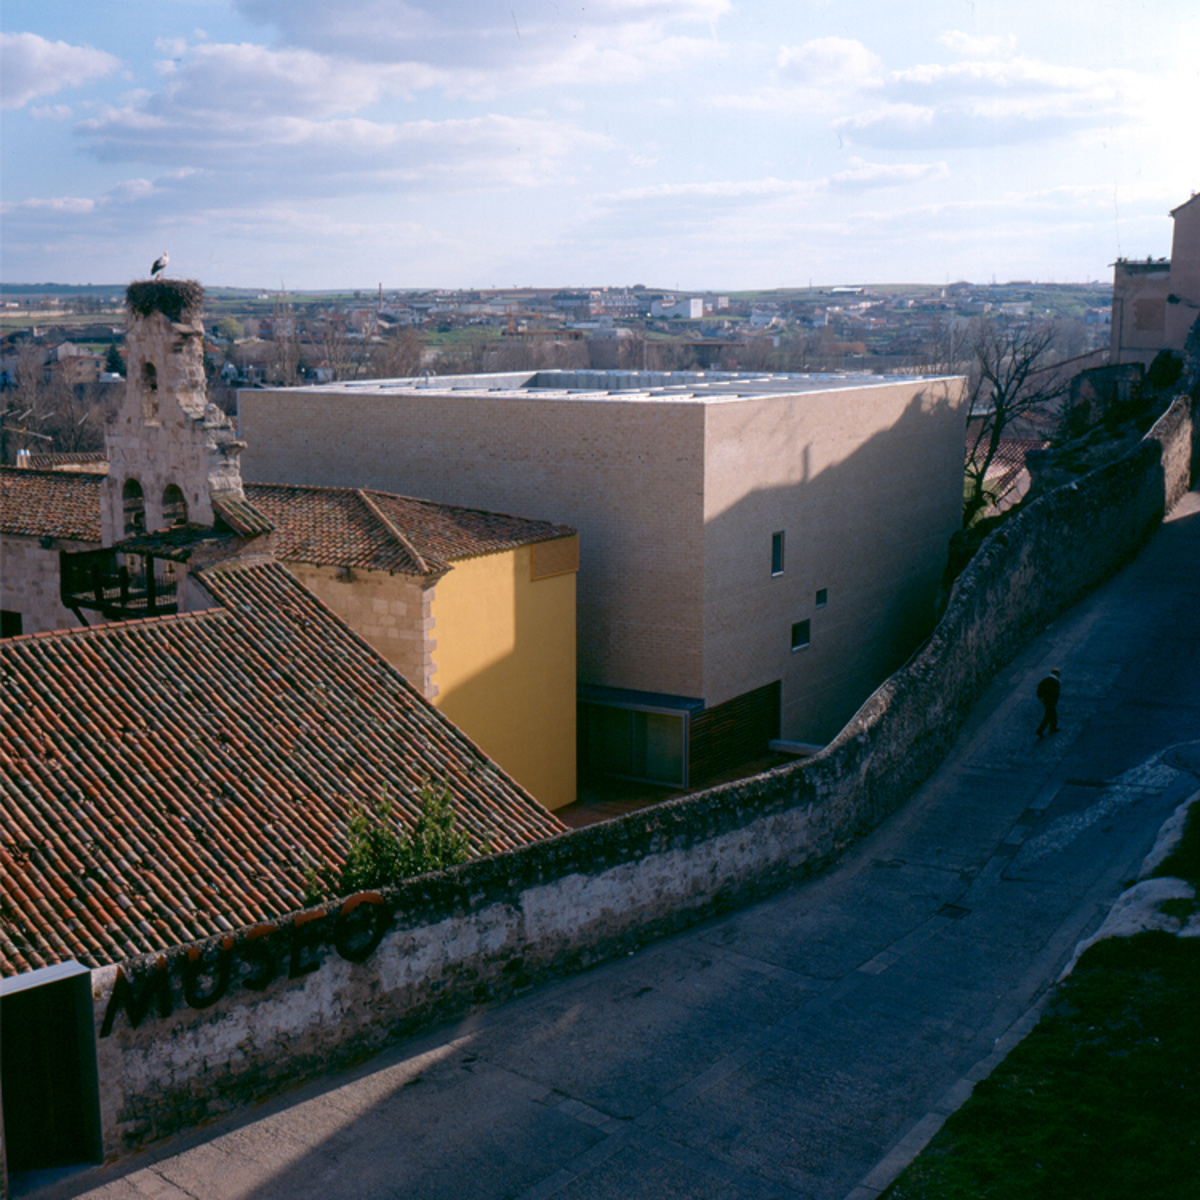  Museo Provincial de Arqueología y Bellas Artes de Zamora